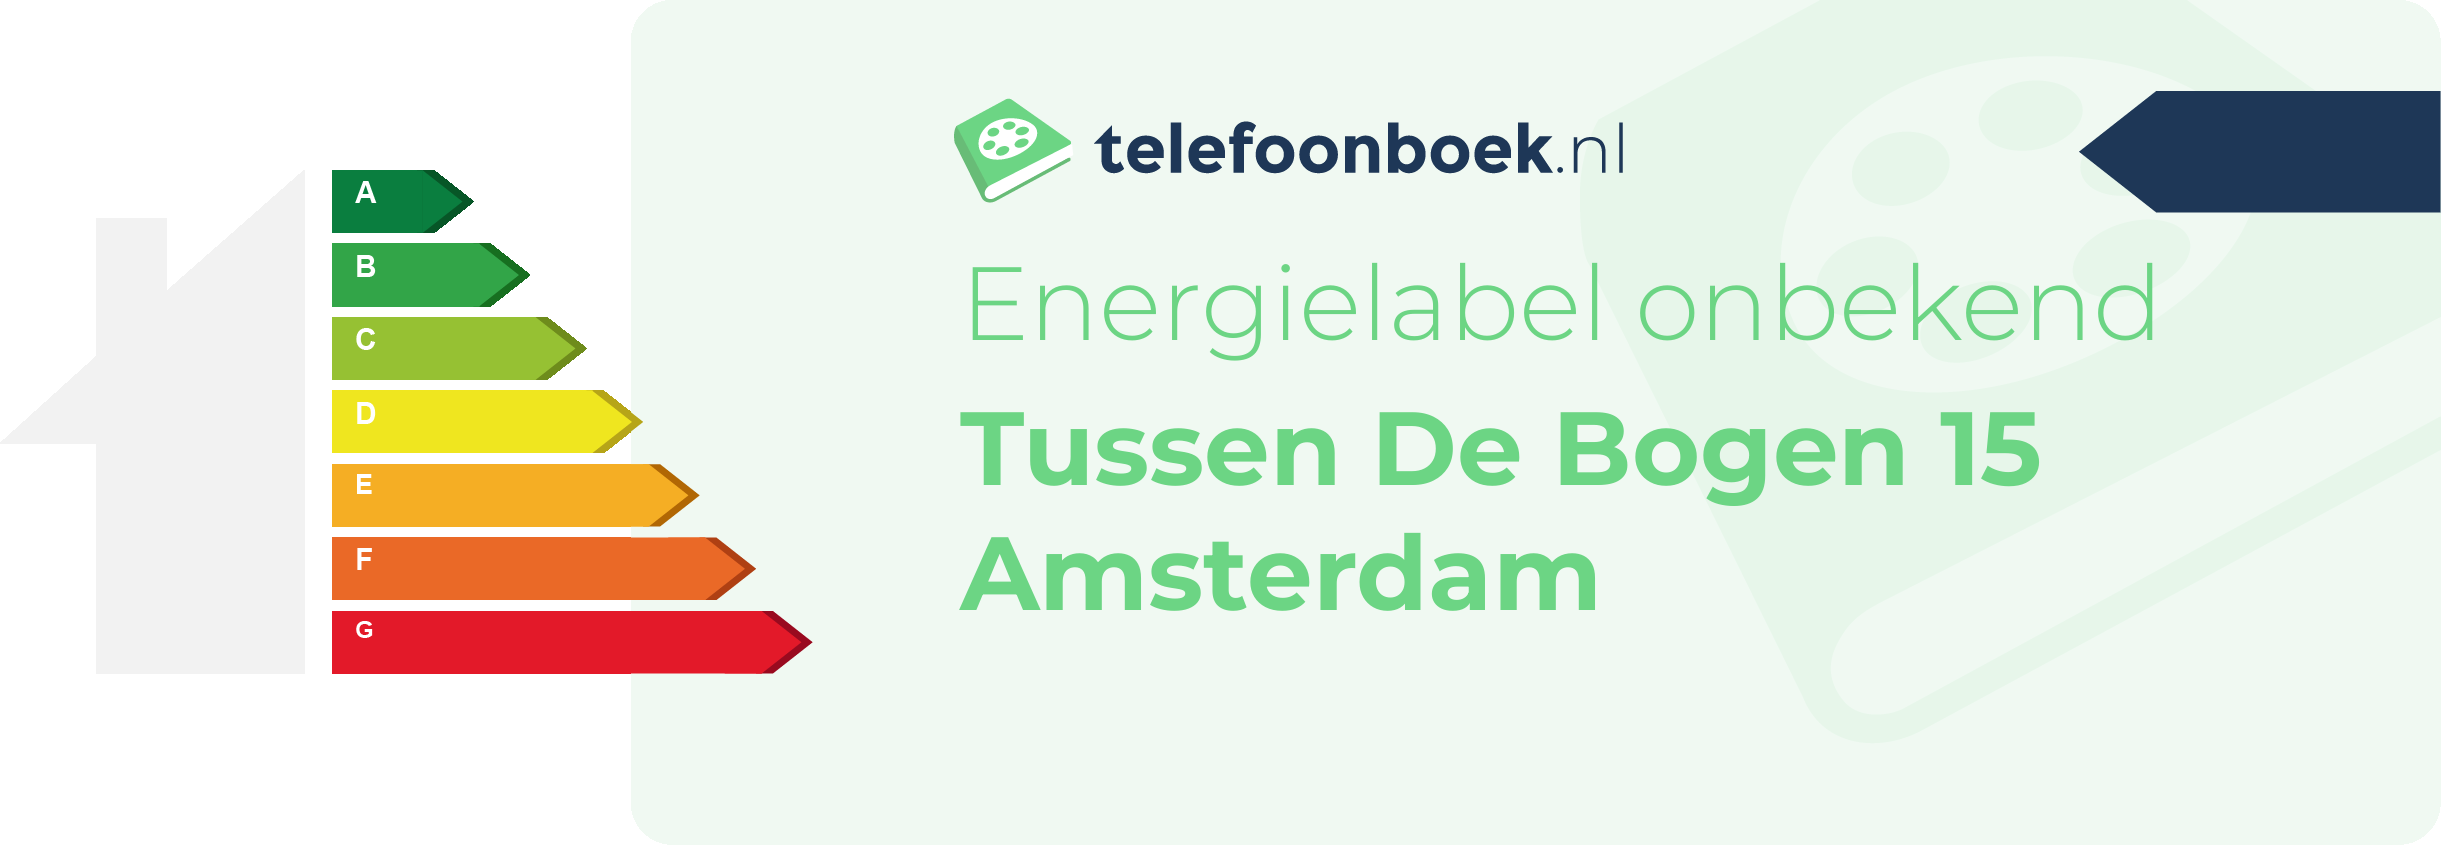 Energielabel Tussen De Bogen 15 Amsterdam